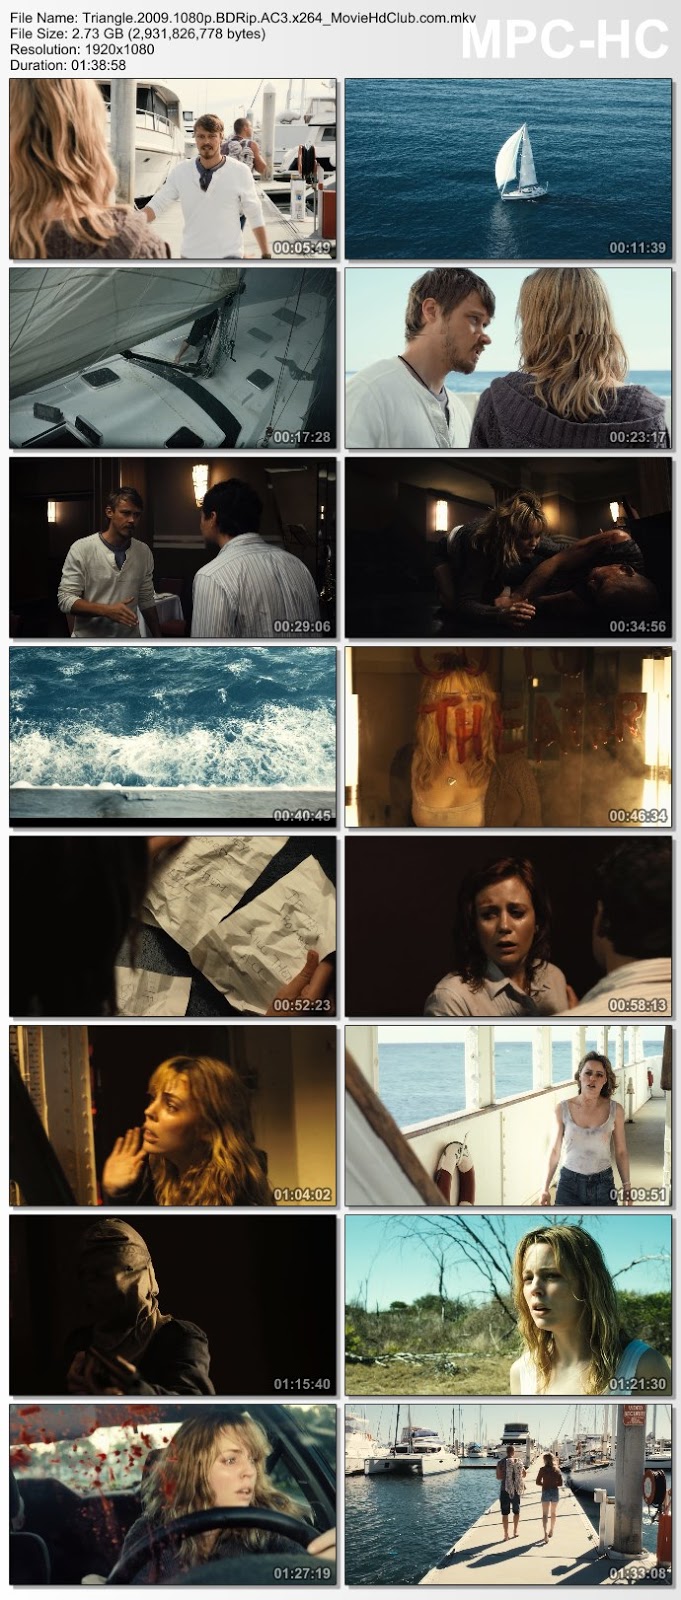 [Mini-HD] Triangle (2009) - เรือสยองมิตินรก [1080p][เสียง:ไทย 5.1/Eng 5.1][ซับ:ไทย/Eng][.MKV][2.73GB] TG_MovieHdClub_SS